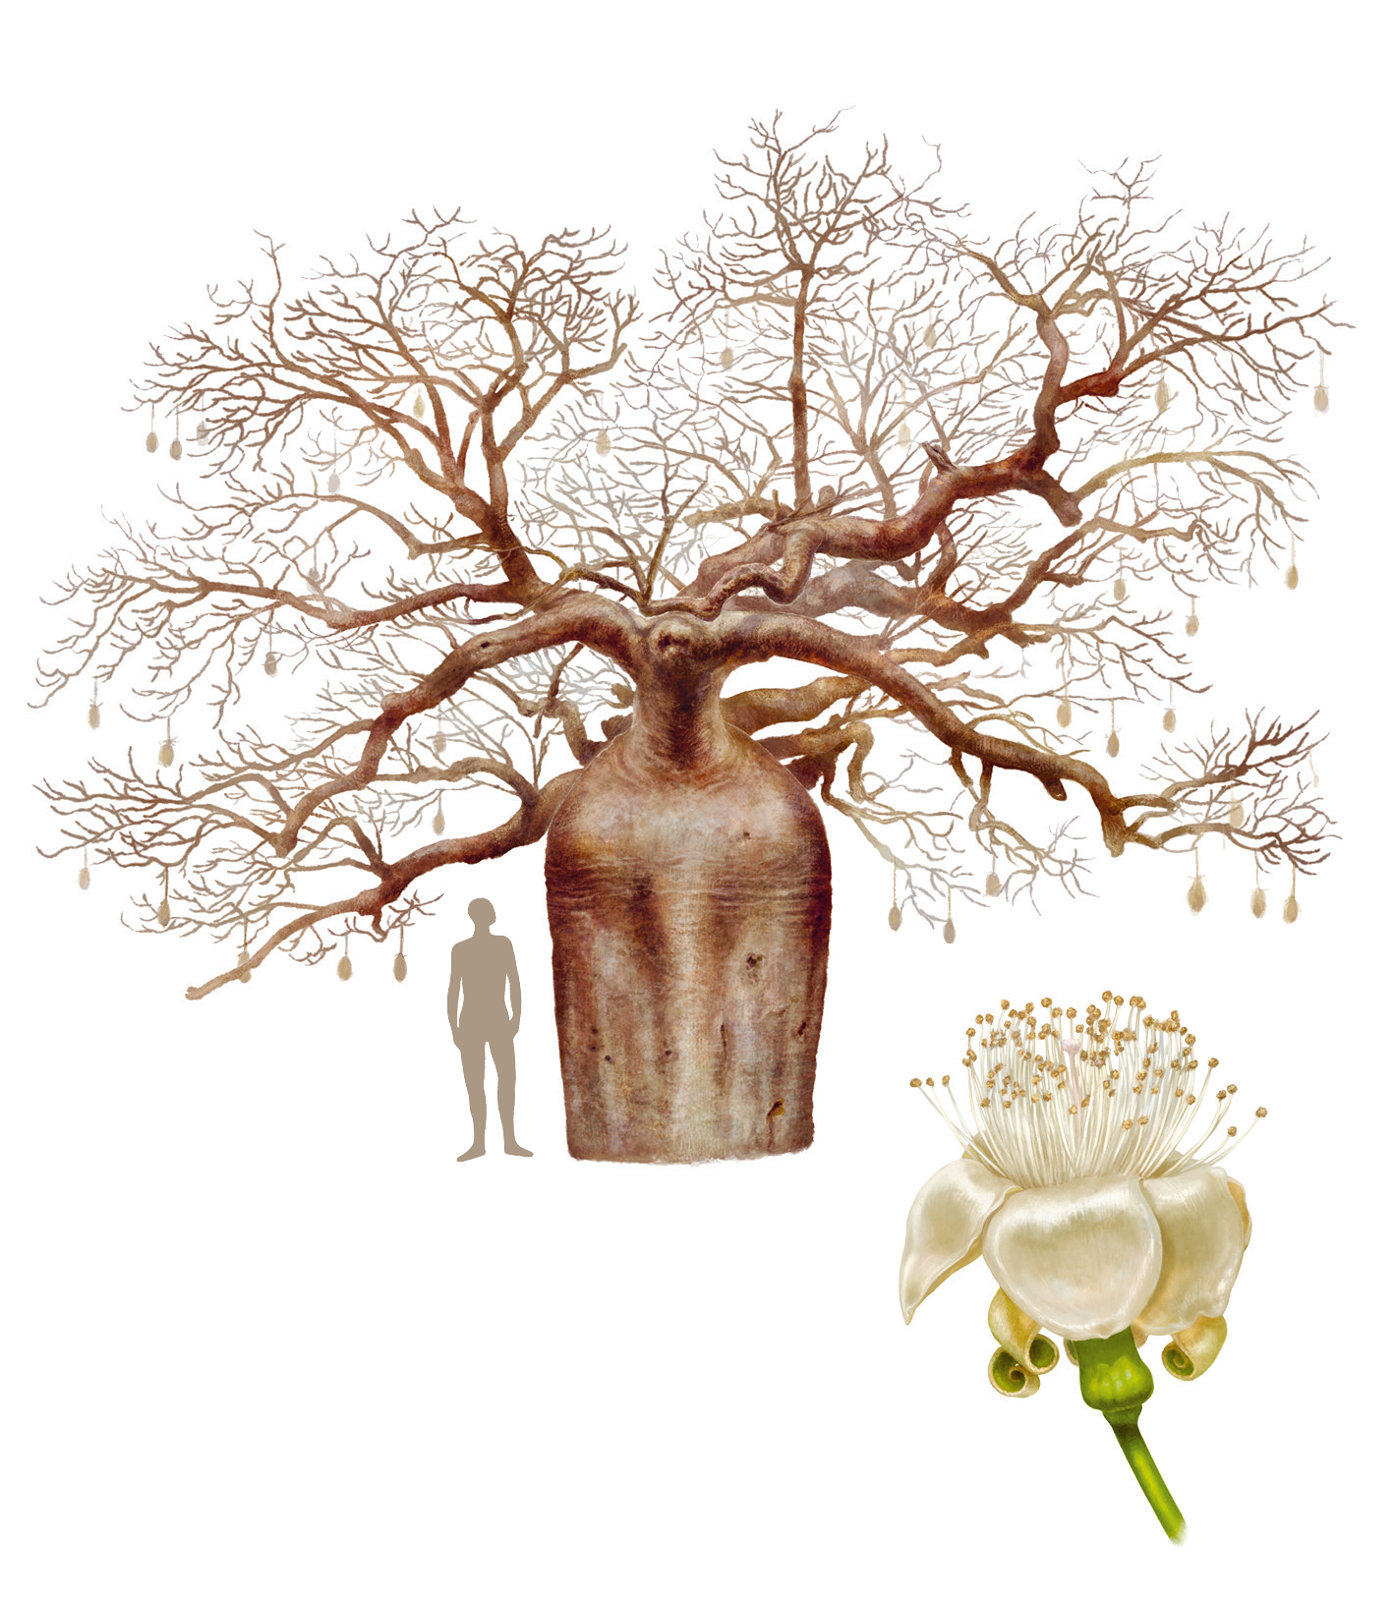 Vergleich eines australischen Baobab-Baumes mit einem Menschen